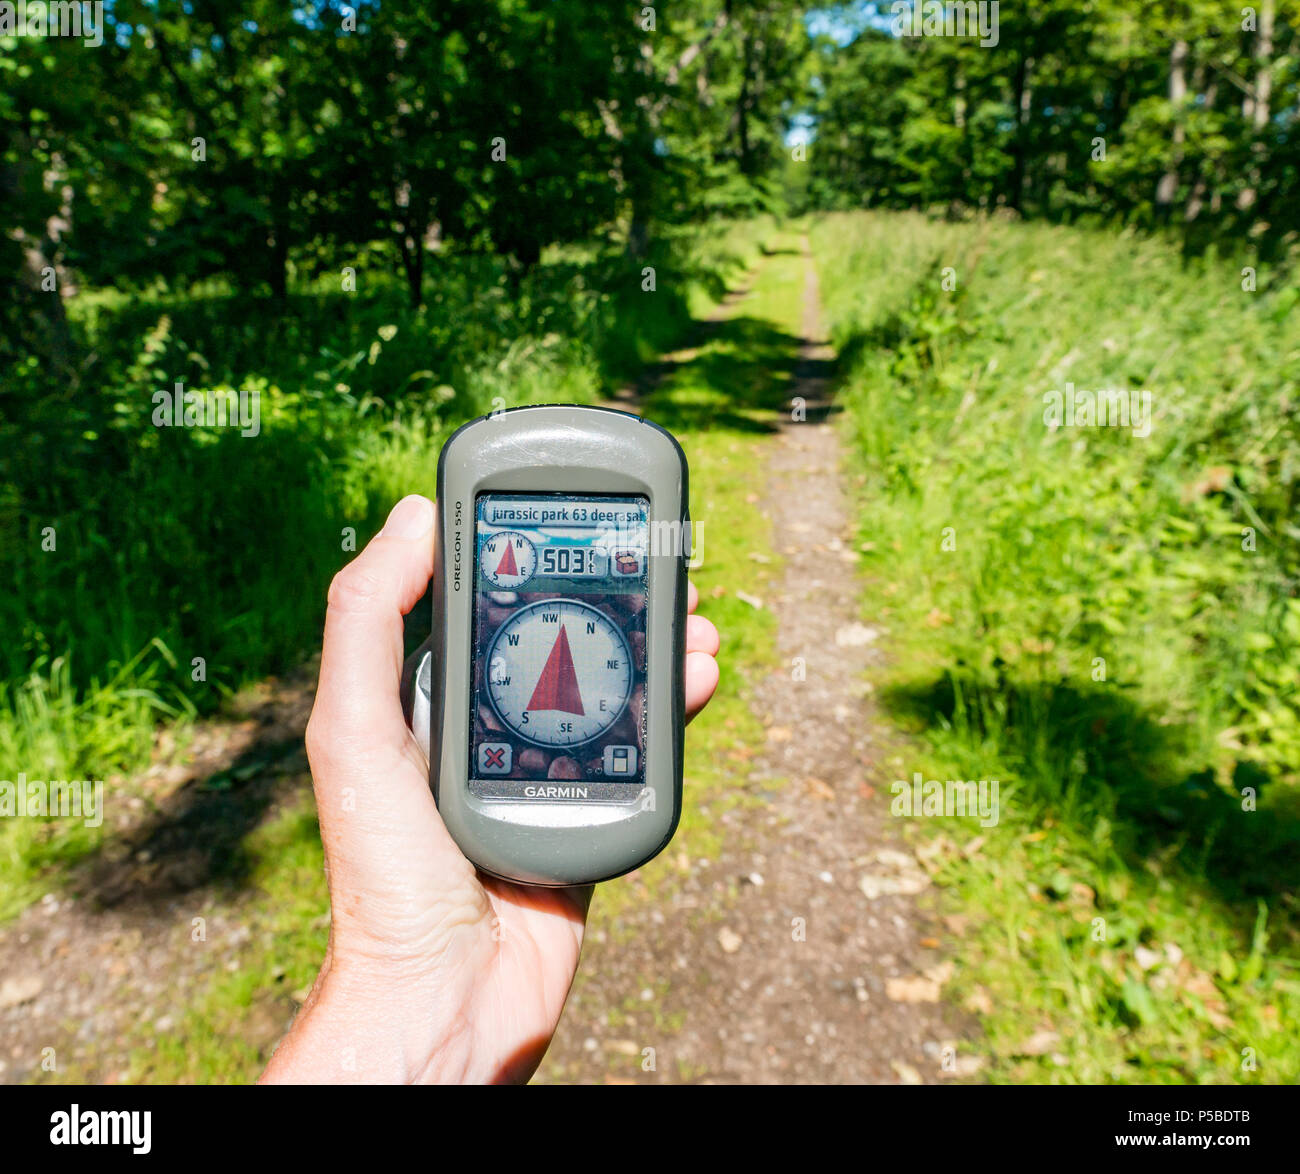 Gros plan de la main d'une femme tenant un GPS Garmin pointant vers un Trésor à 500 mètres sur un sentier de campagne, Écosse, Royaume-Uni Banque D'Images